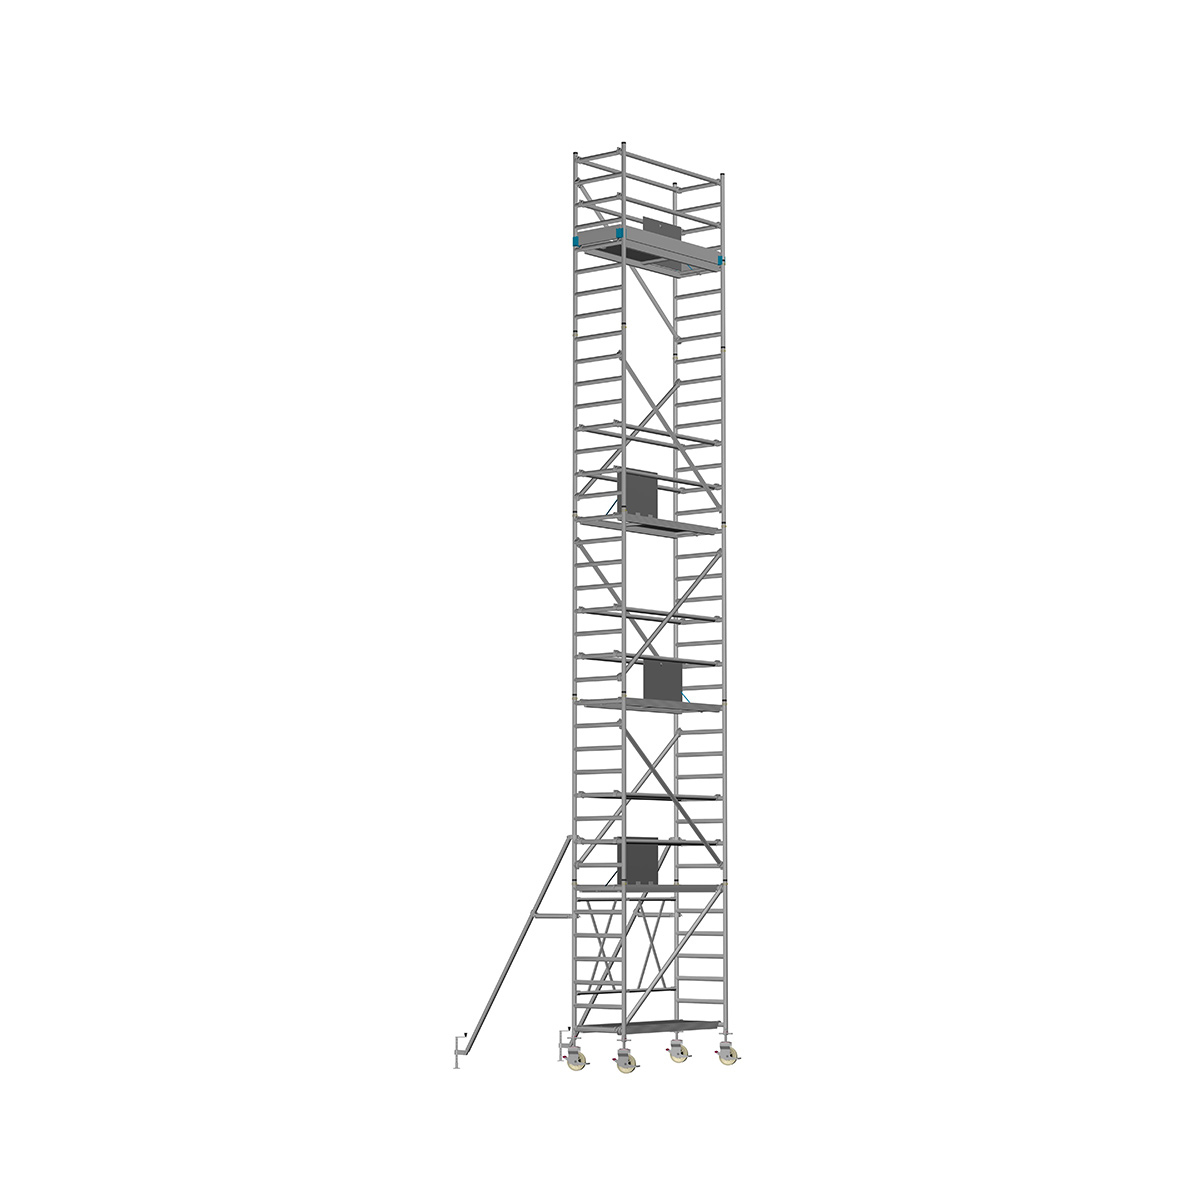 Chiemsee 2 LIGHT - Länge: 2,54 m - Breite: 0,74 m, Standhöhe 0,80 m